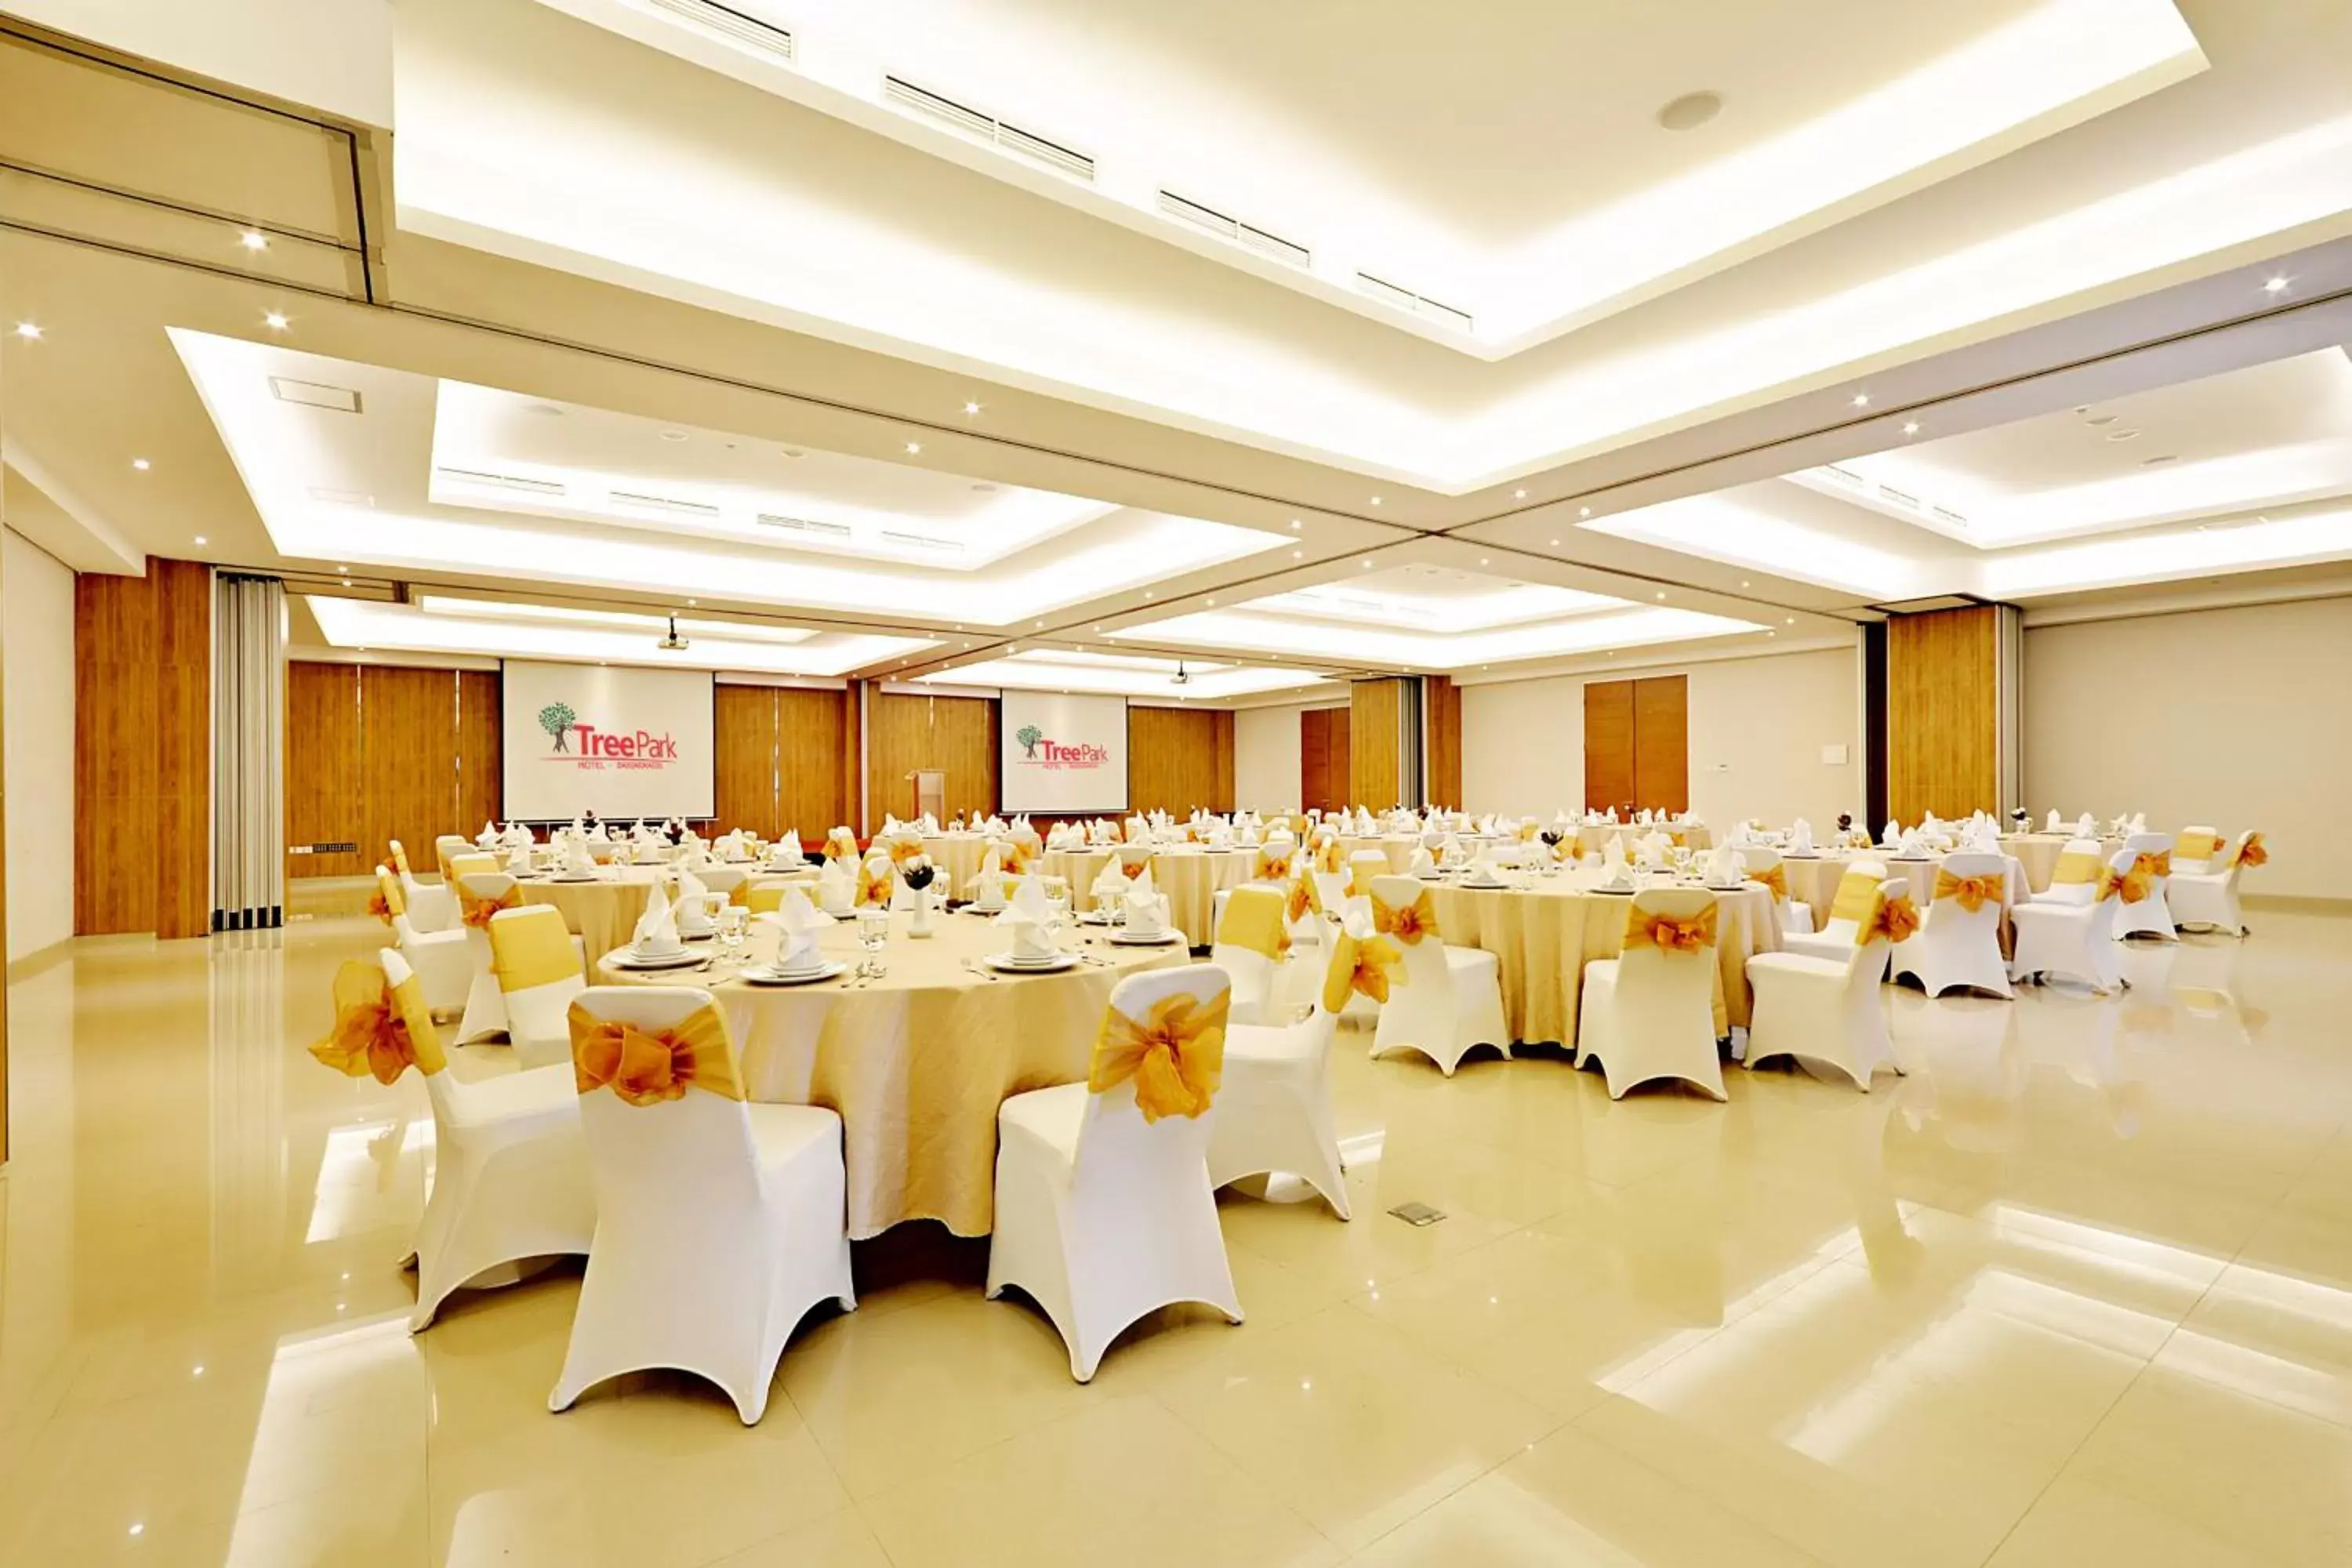 Banquet/Function facilities, Banquet Facilities in TreePark Banjarmasin